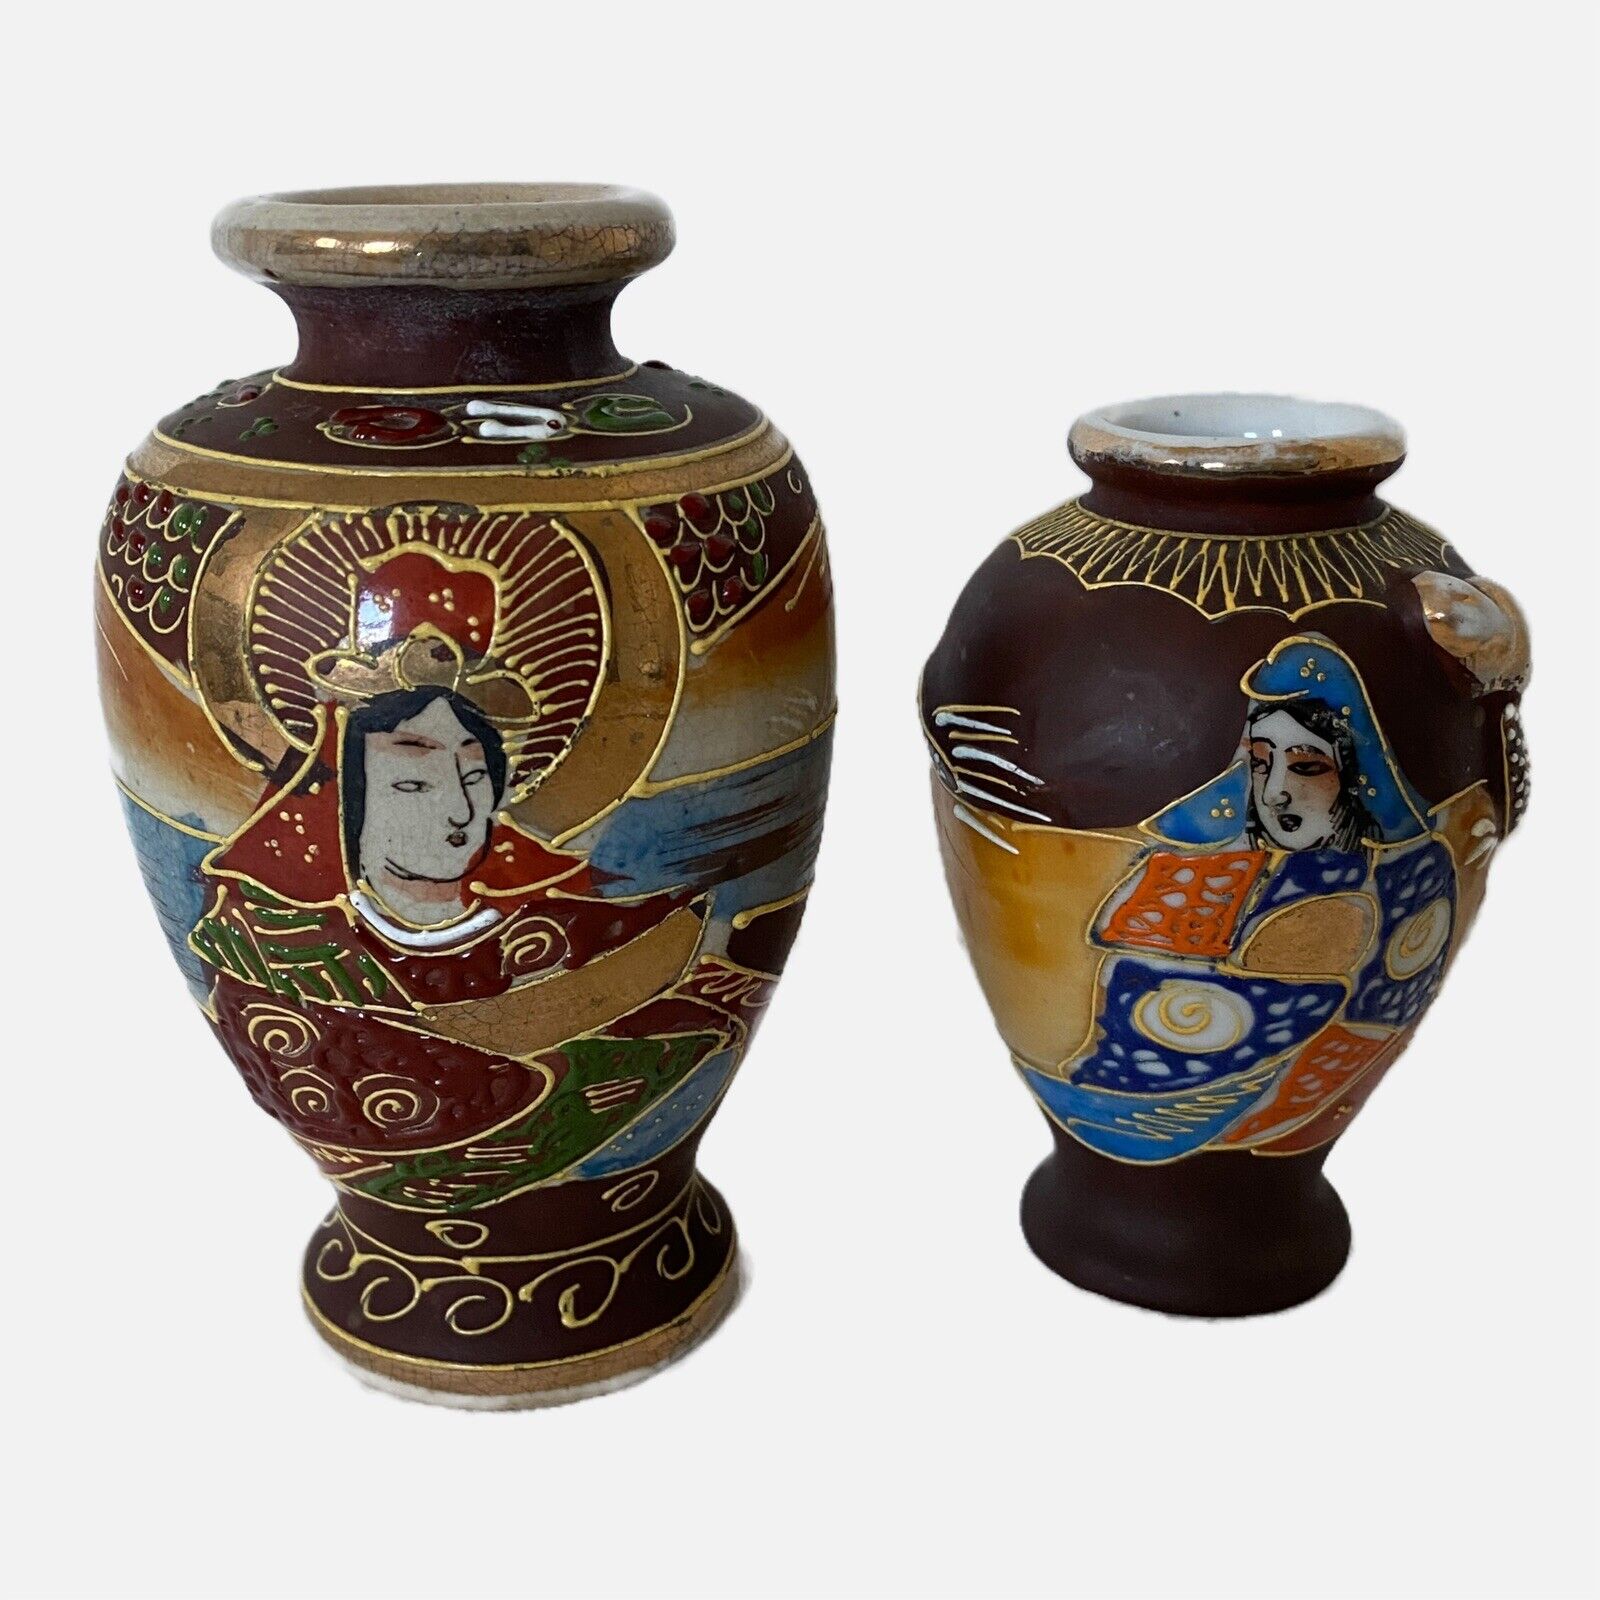 Set 2 Vintage Japan Porcelain Moriage Vases Hand Painted Gold Gilt Pottery